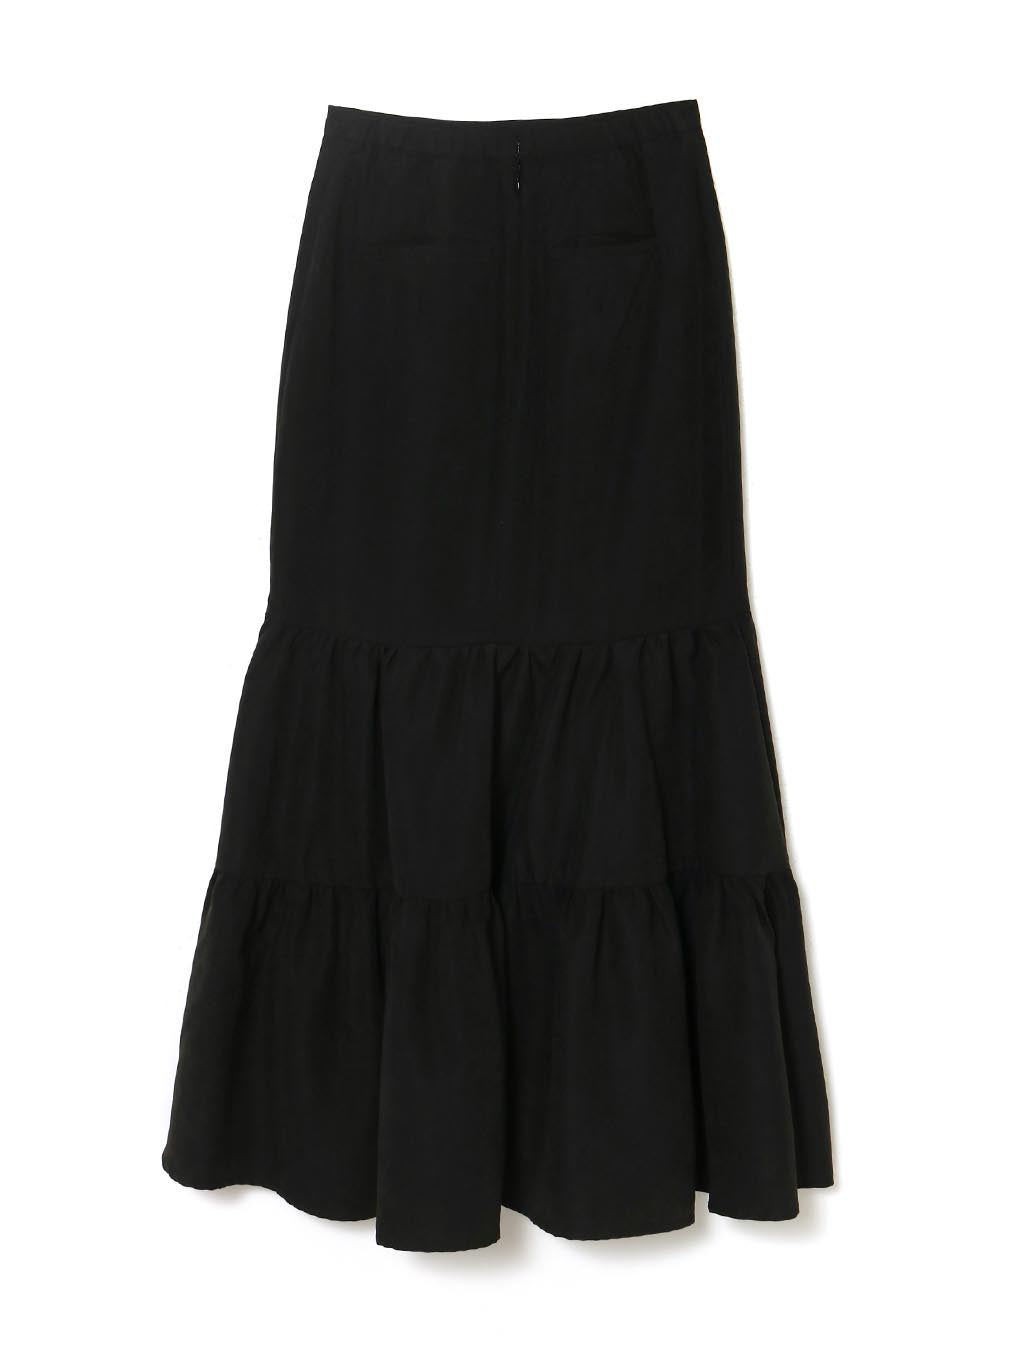 パソコンSサイズ Kiera tiered skirt スカート andmarry 黒 スカート